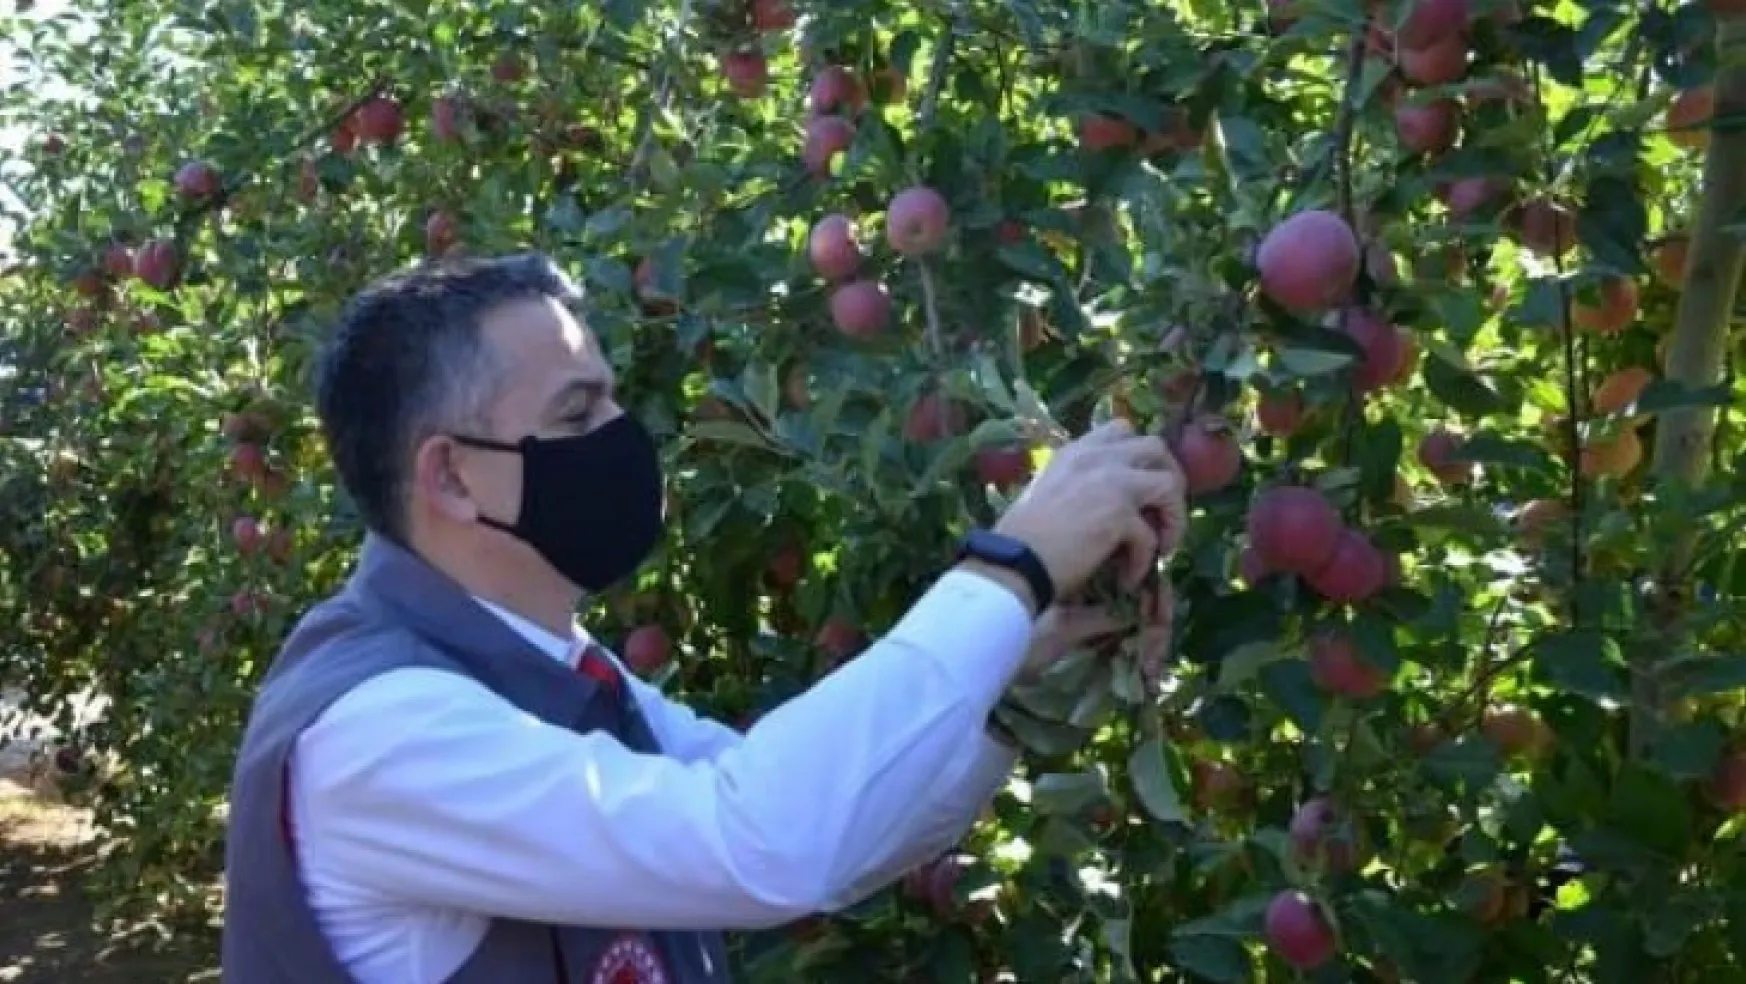 Bakan Pakdemirli Karaman'da bahçeye girip elma topladı